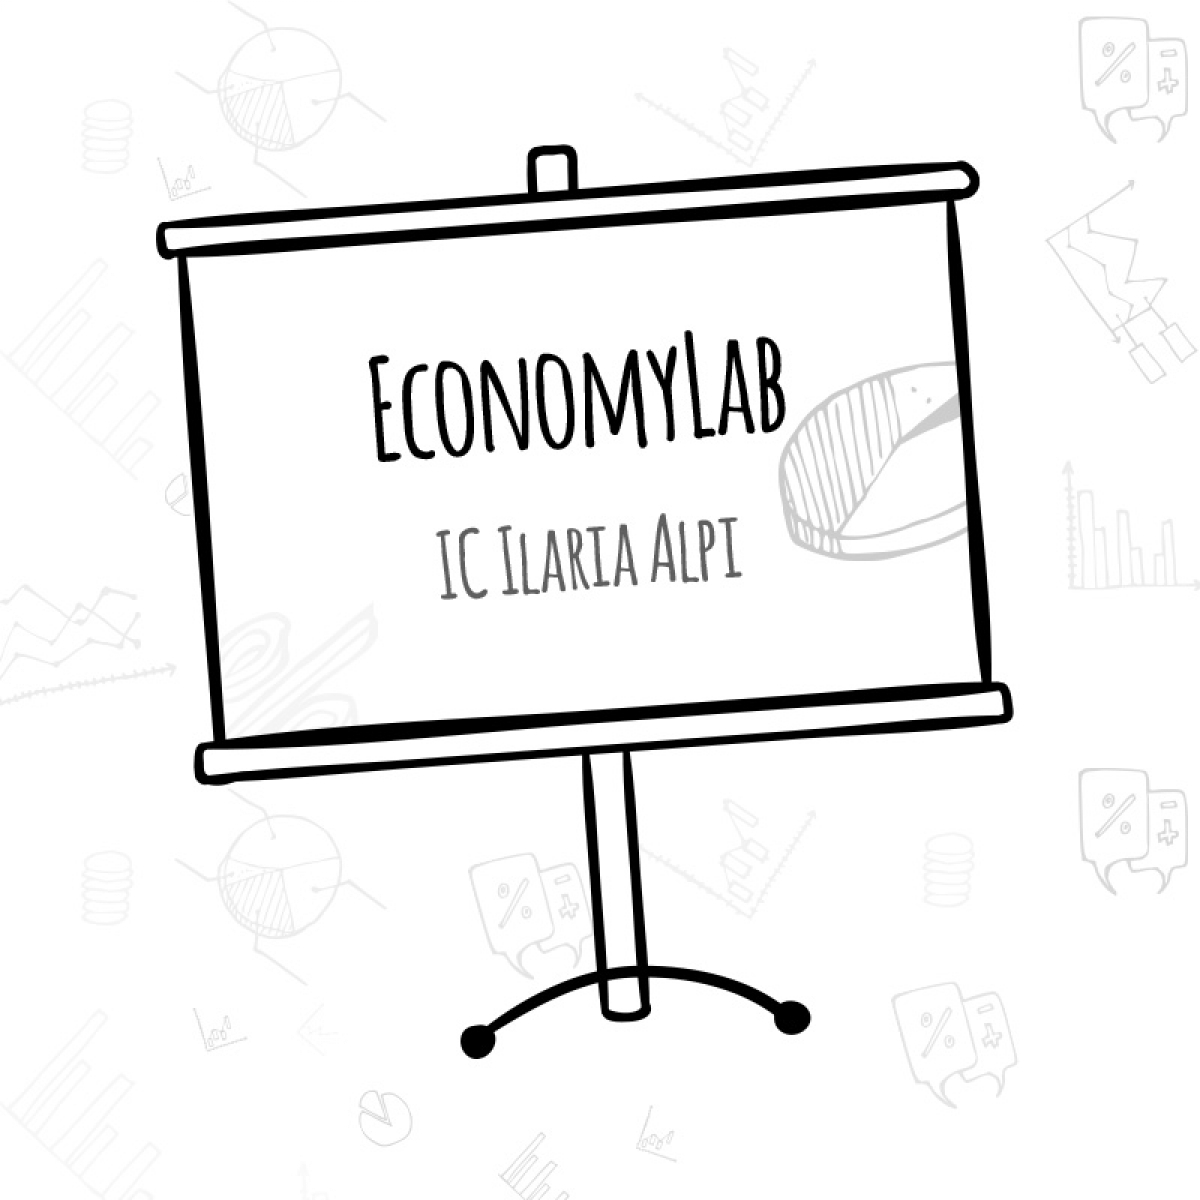 Economy Lab, il progetto dell’Istituto Alpi-Levi di Napoli per promuovere conoscenza e legalità in ambito finanziario